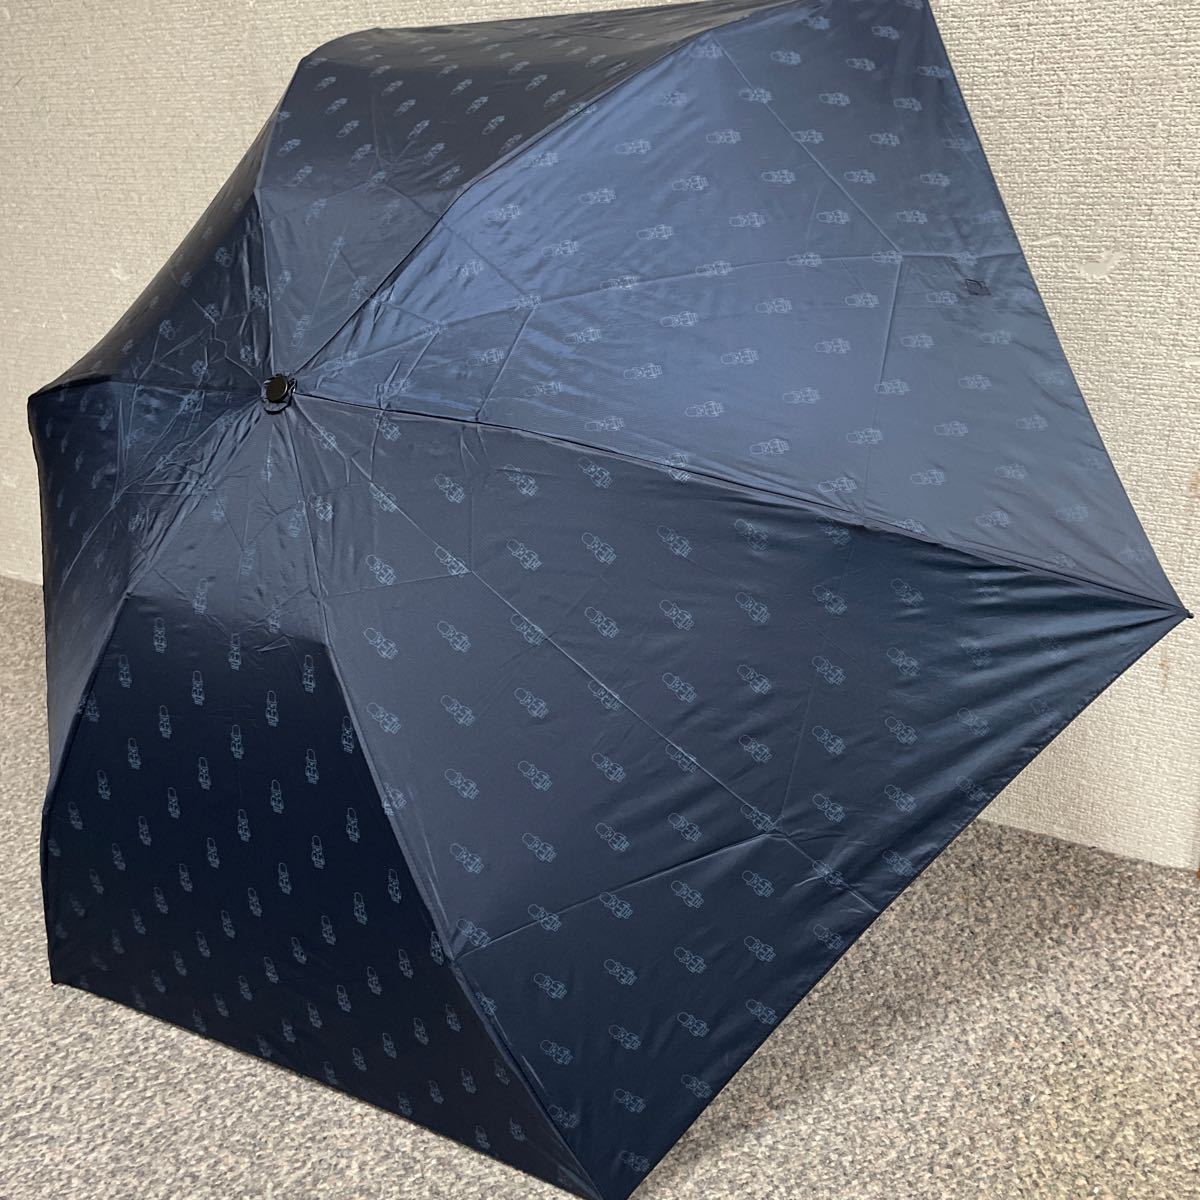 新品 マッキントッシュ 傘 雨傘 折りたたみ傘 バーブレラ 軽量 バッキンガムベア